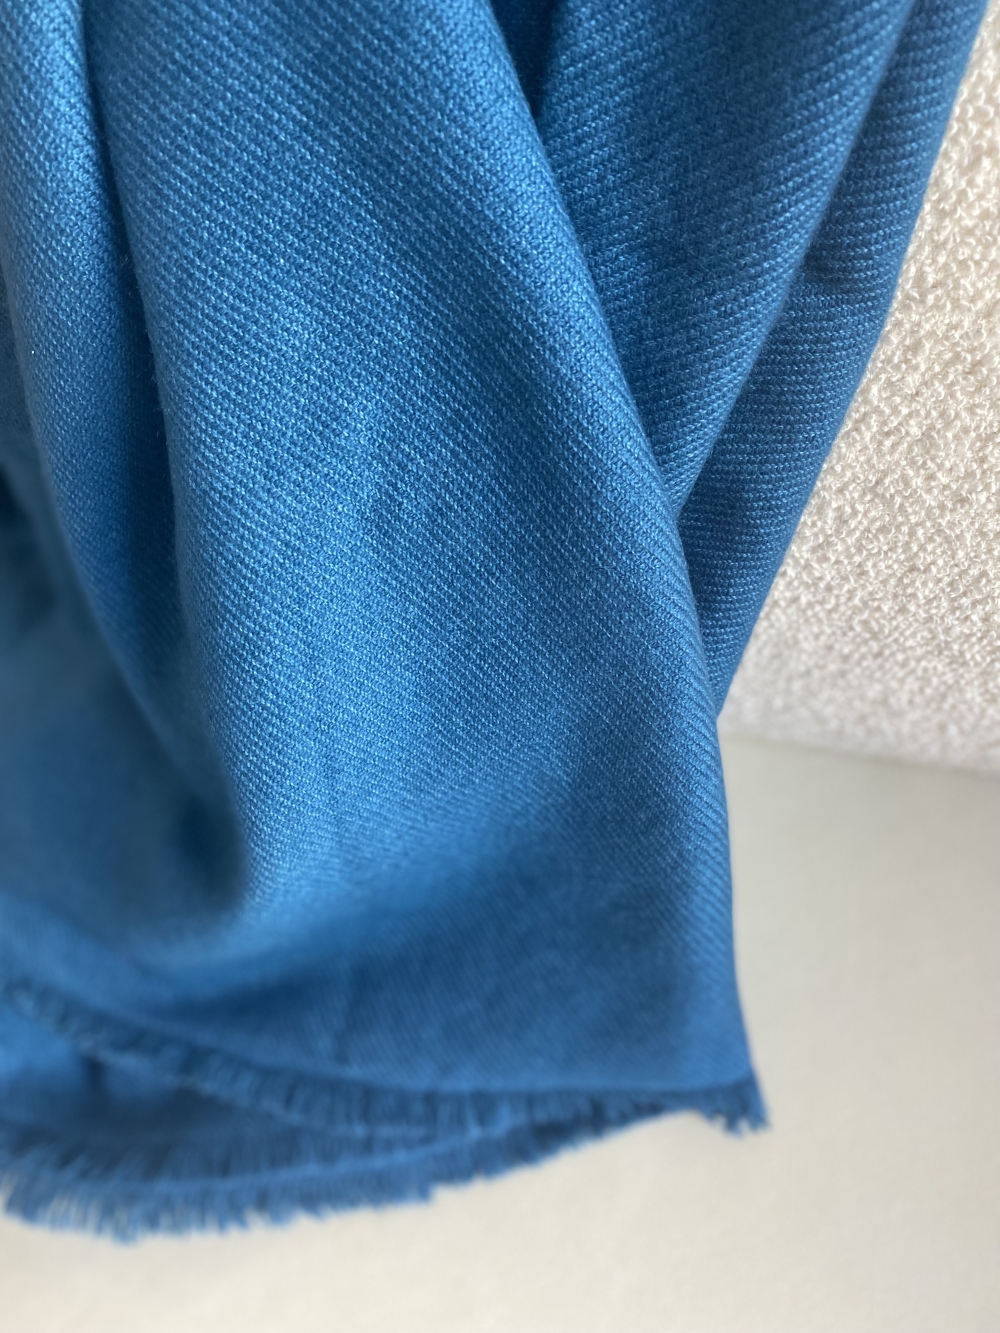 Cachemire accessoires nouveautes toodoo plain s 140 x 200 bleu canard 140 x 200 cm